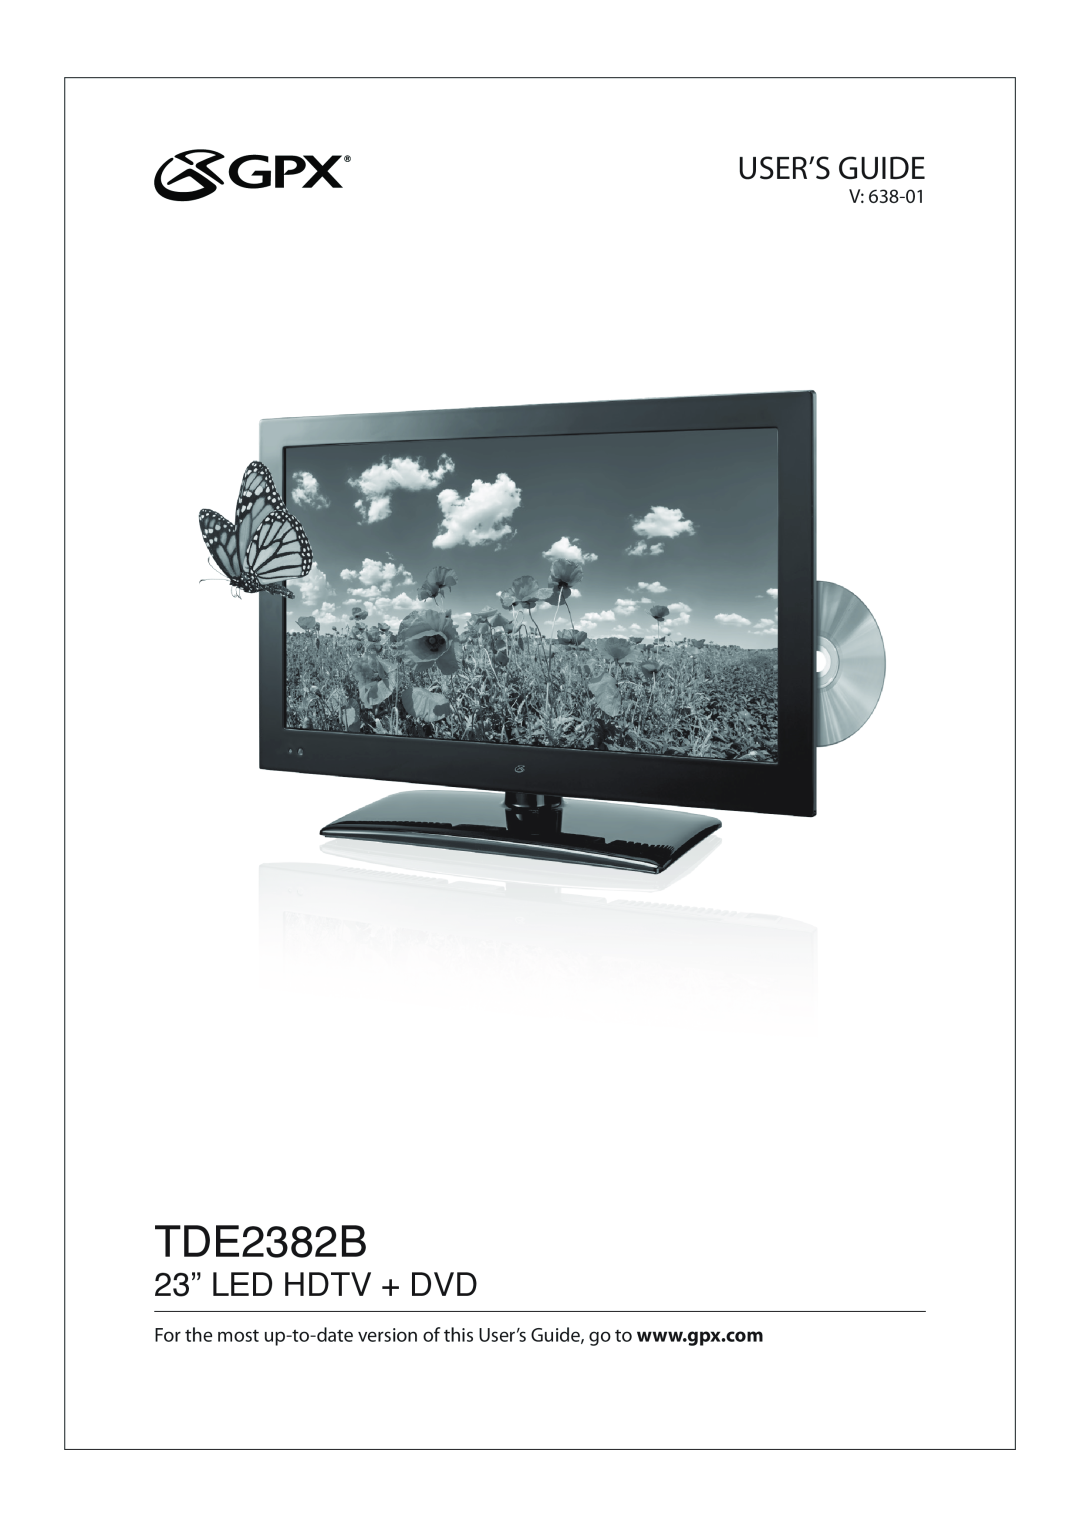 GPX TDE2382B manual User’S Guide, 23” LED HDTV + DVD 